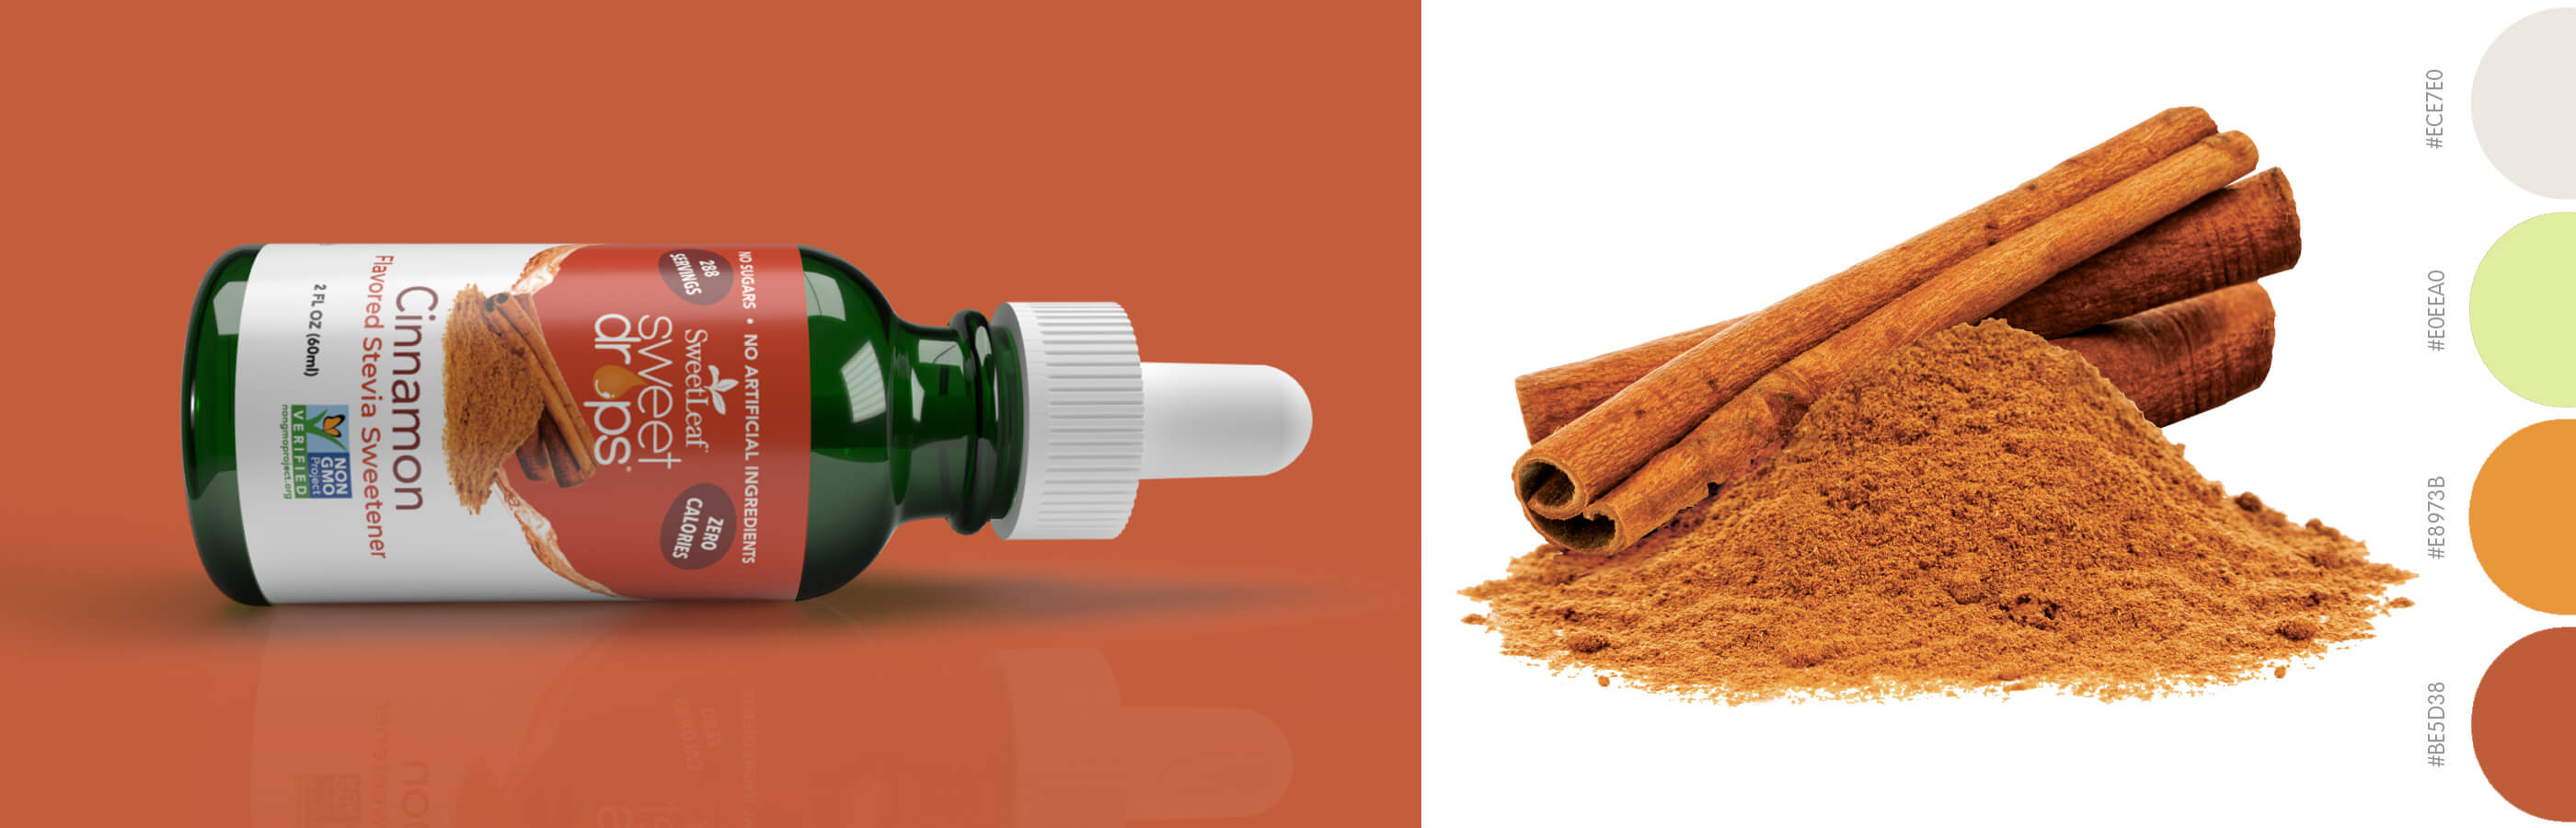 sweet drops cinnamon package design image